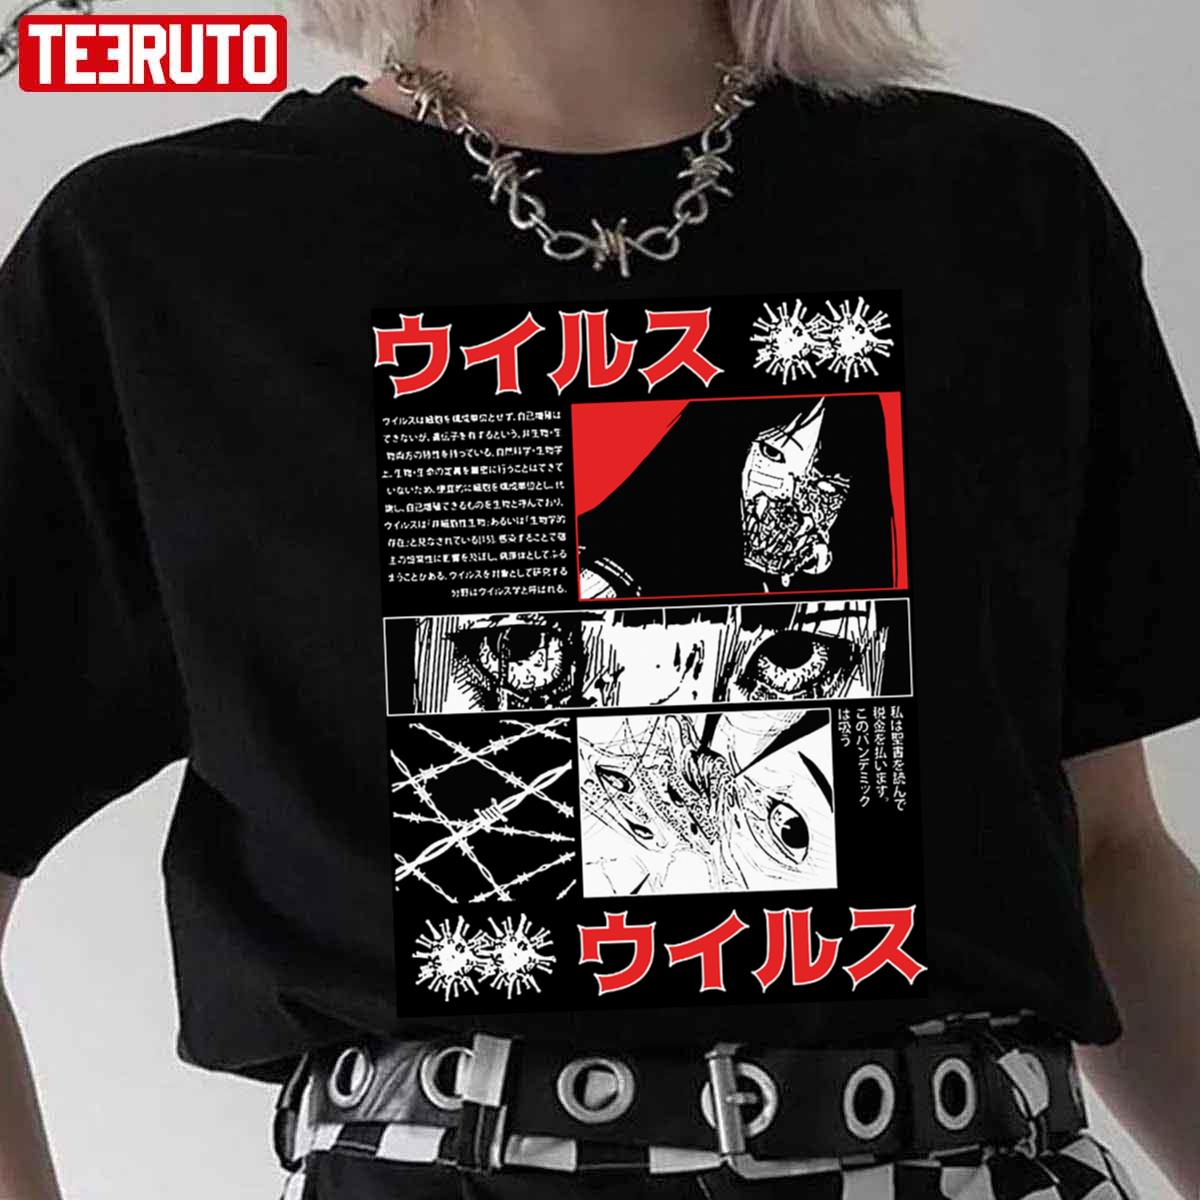 Japanese Vaporwave Cyberpunk Graphic Anime Manga Creepy Gothic Unisex T-Shirt